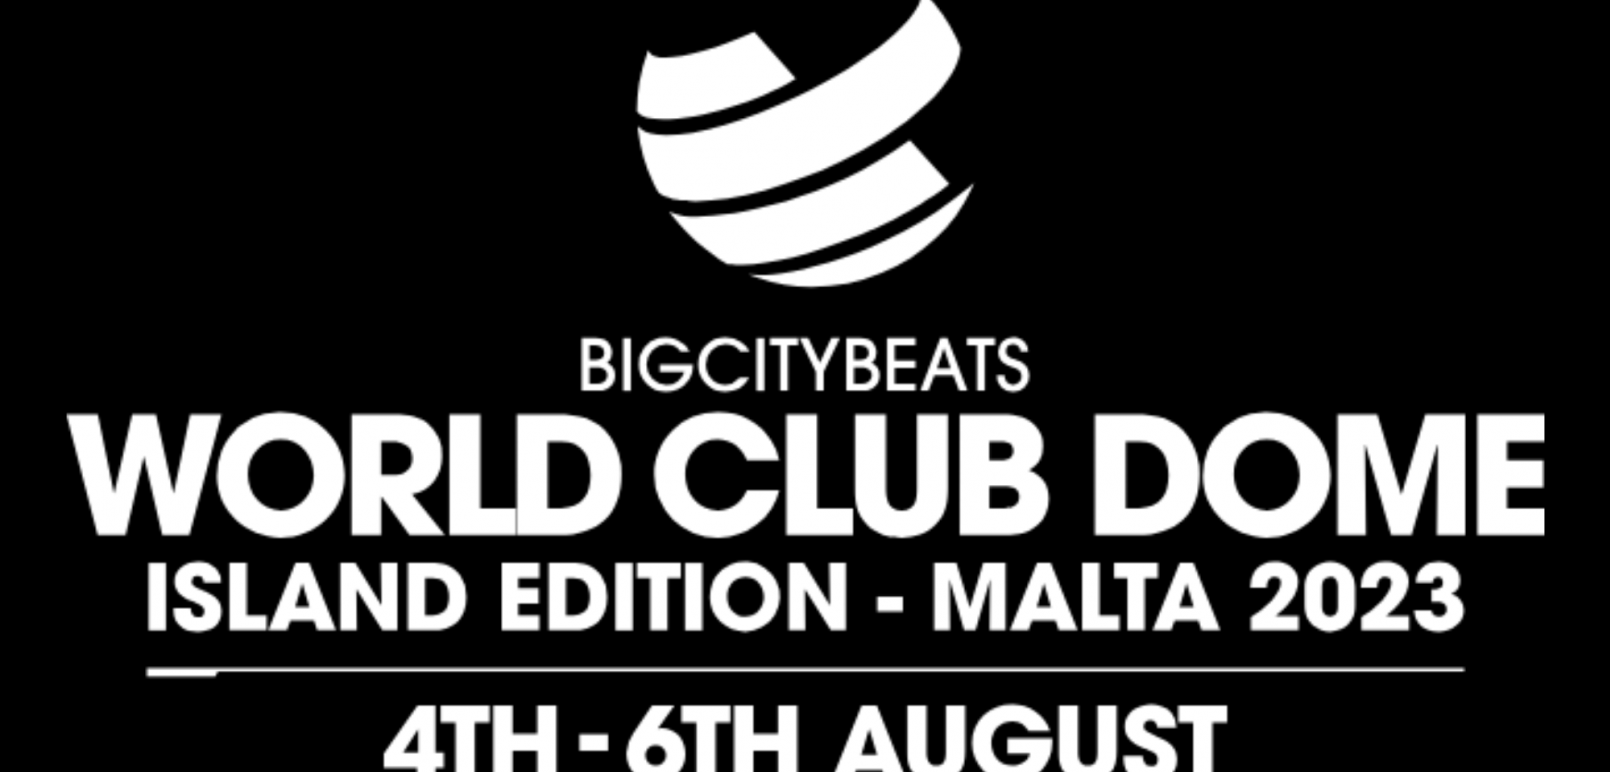 World Club Dome Malta